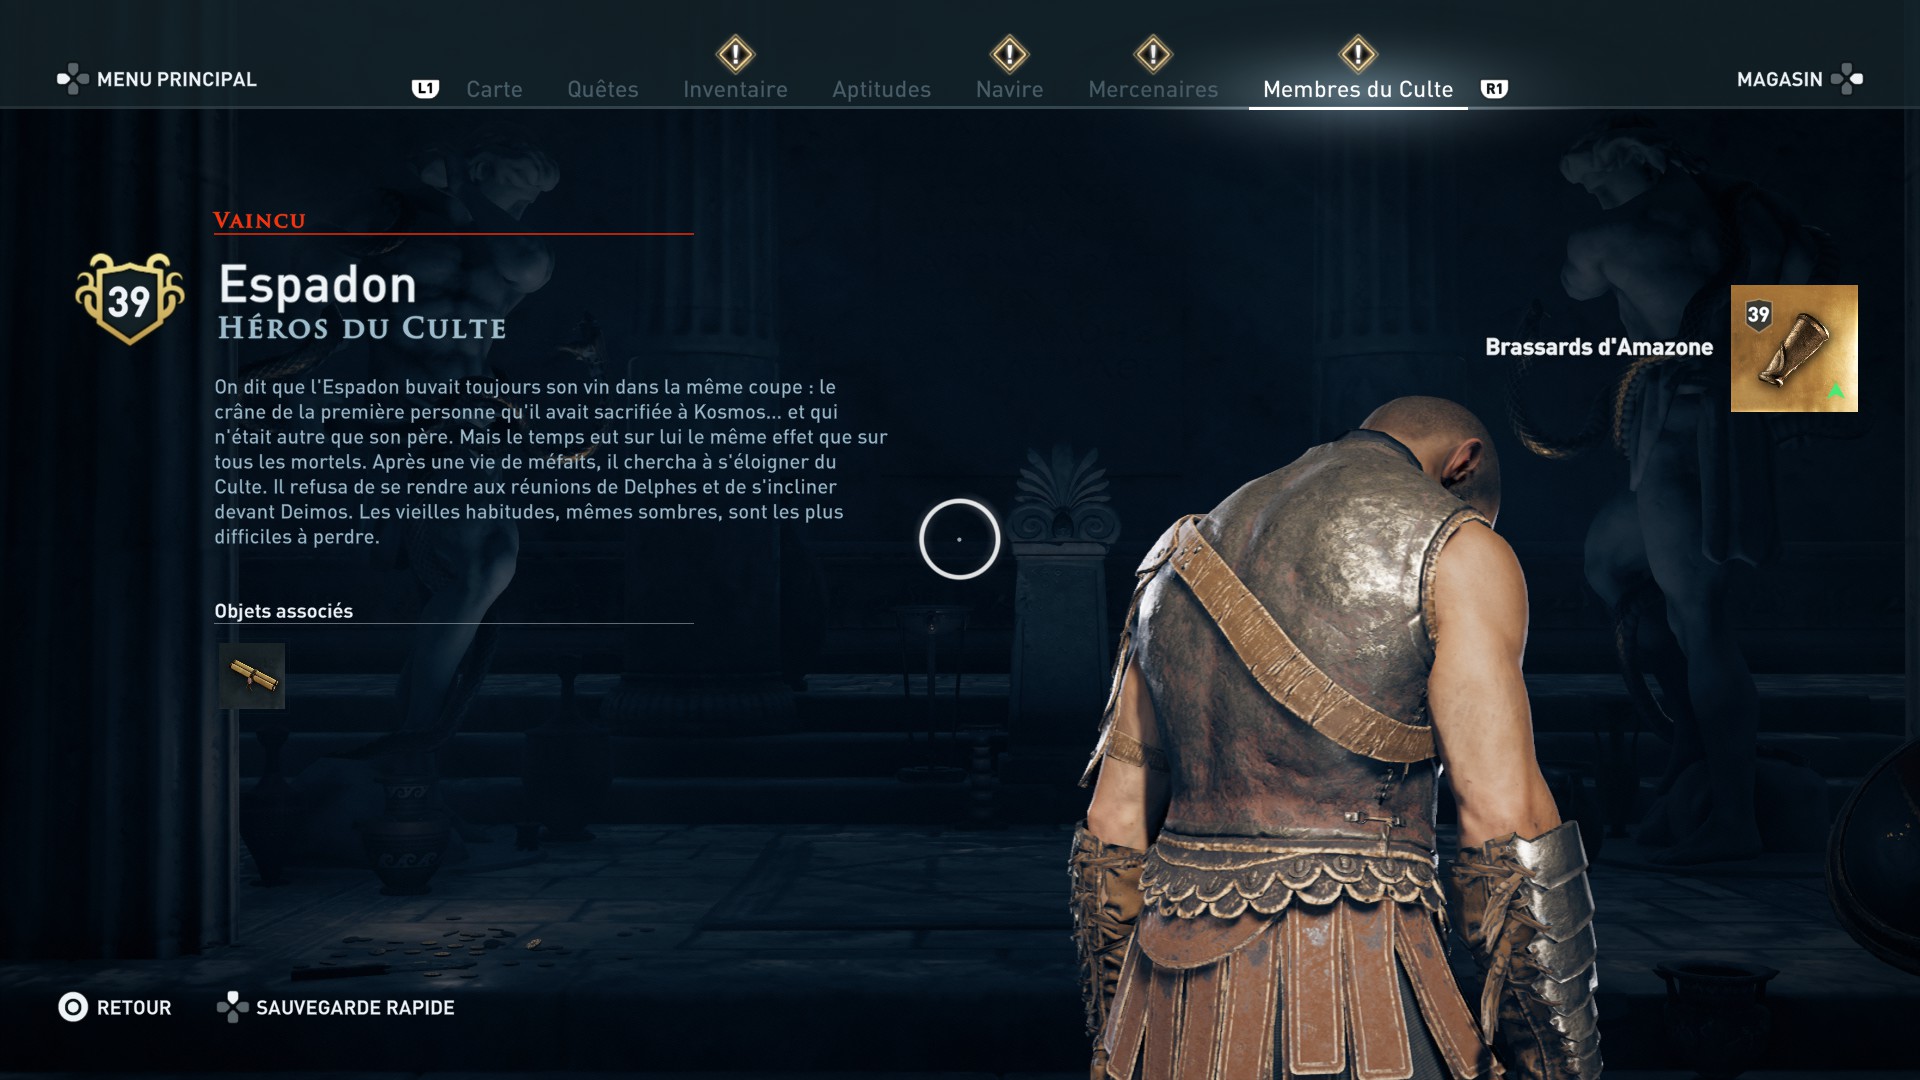 Assassin's Creed Odyssey trouver et tuer les adeptes du culte du Kosmos, ps4, xbox one, pc, ubisoft, jeu vidéo, chrysis, adorateur de la lignée